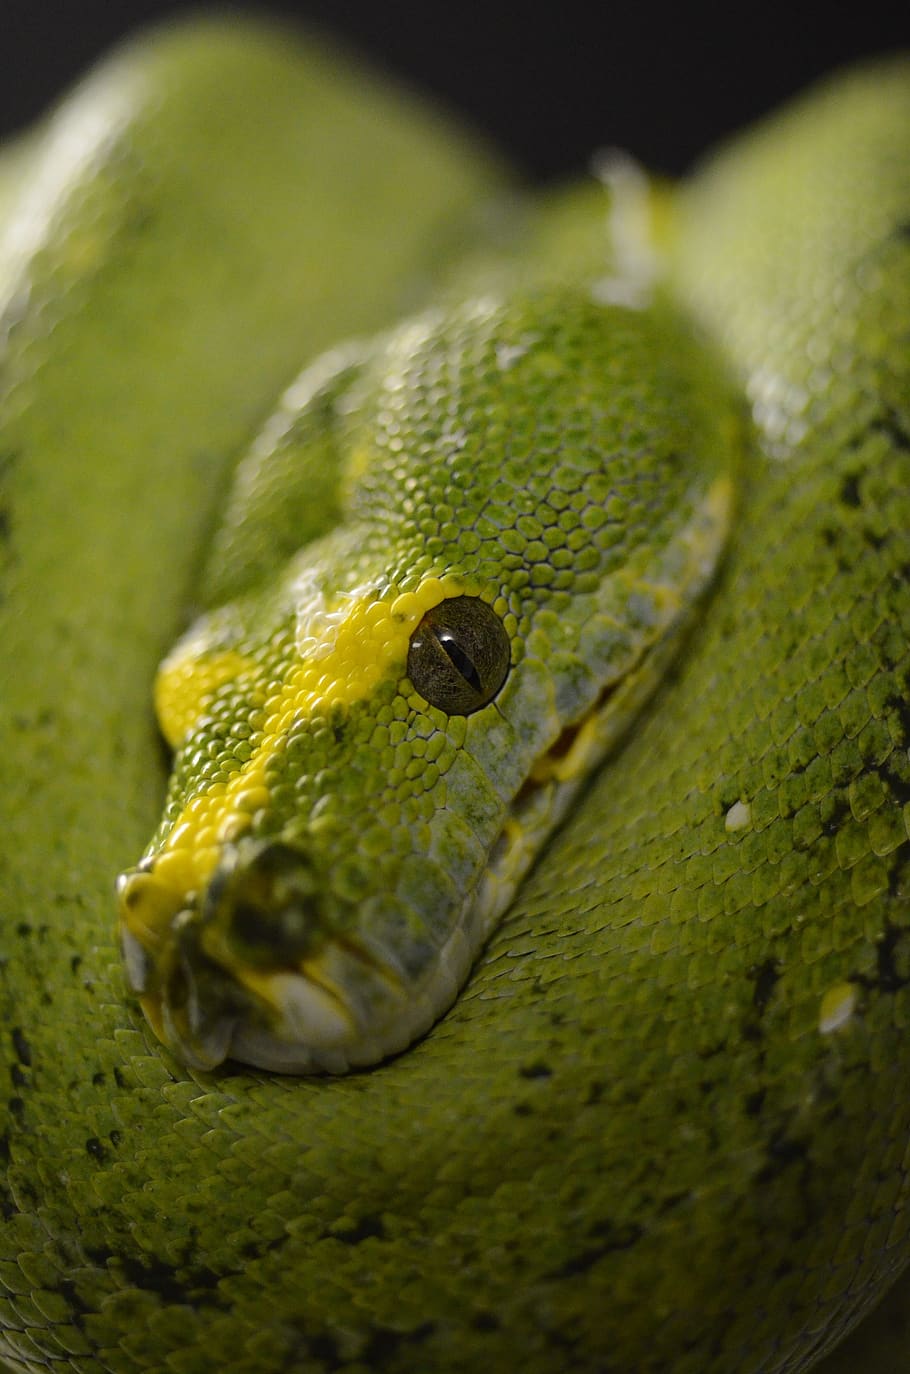 ular, reptil, python pohon hijau, hijau, python, hewan, satu hewan, warna hijau, close-up, bertulang belakang